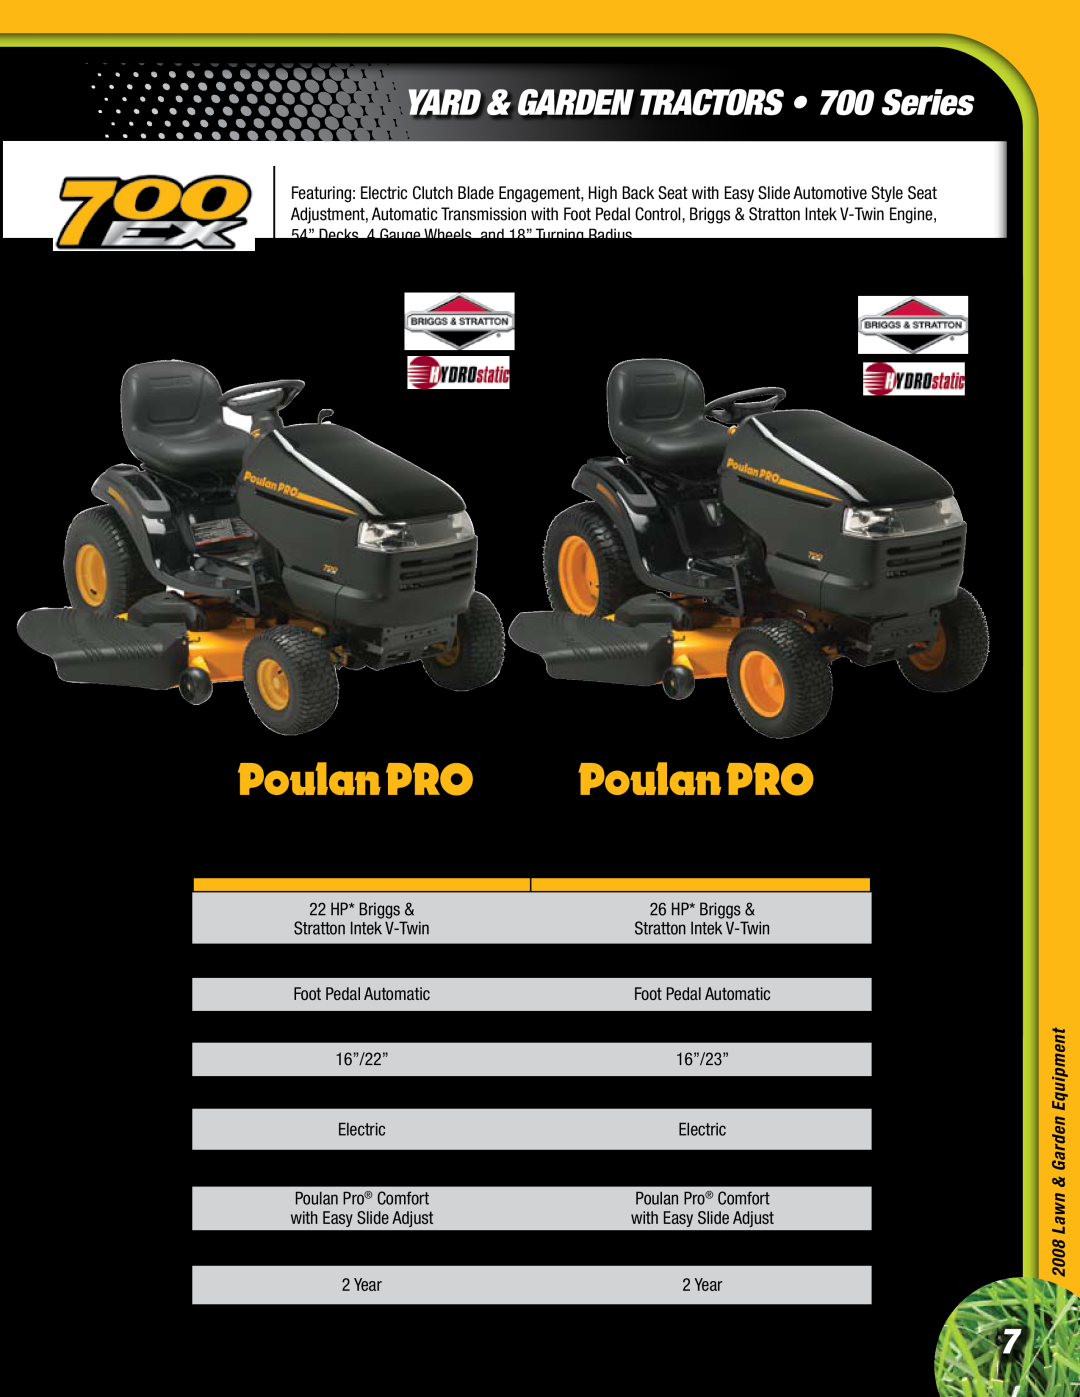 Poulan Lawn & Garden Tractor PBGT26H54, PB22H54BF, YARD & GARDEN TRACTORS 700 Series, Yard Tractor, Engine, Deck, Seat 